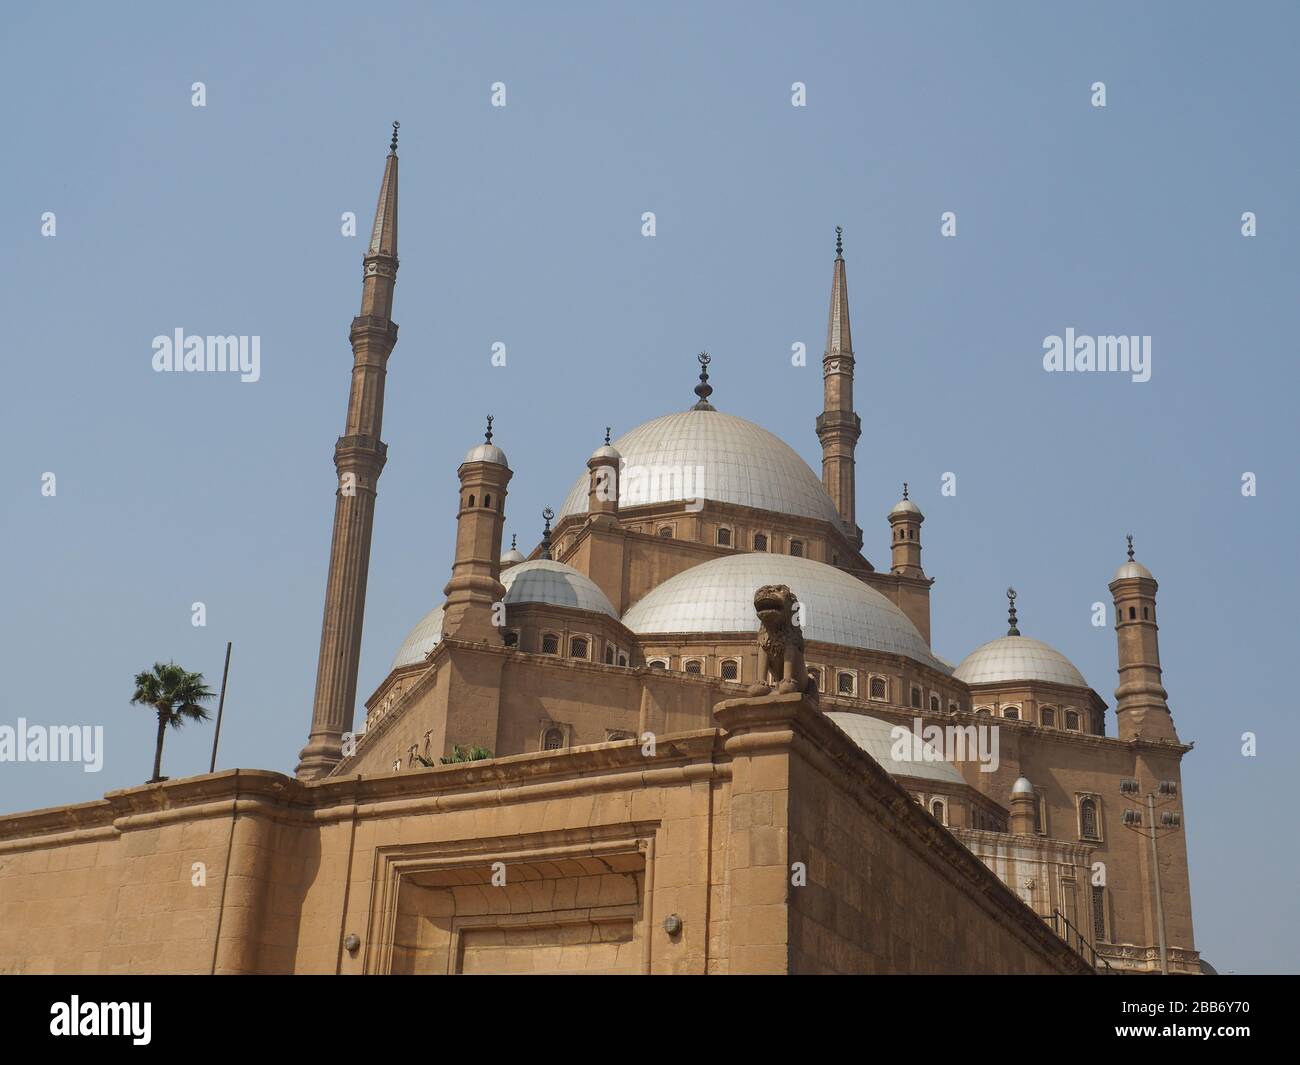 Le Caire, Egypte, février 2020 un regard sur la façade avant de la célèbre mosquée muhammad ali au caire Banque D'Images